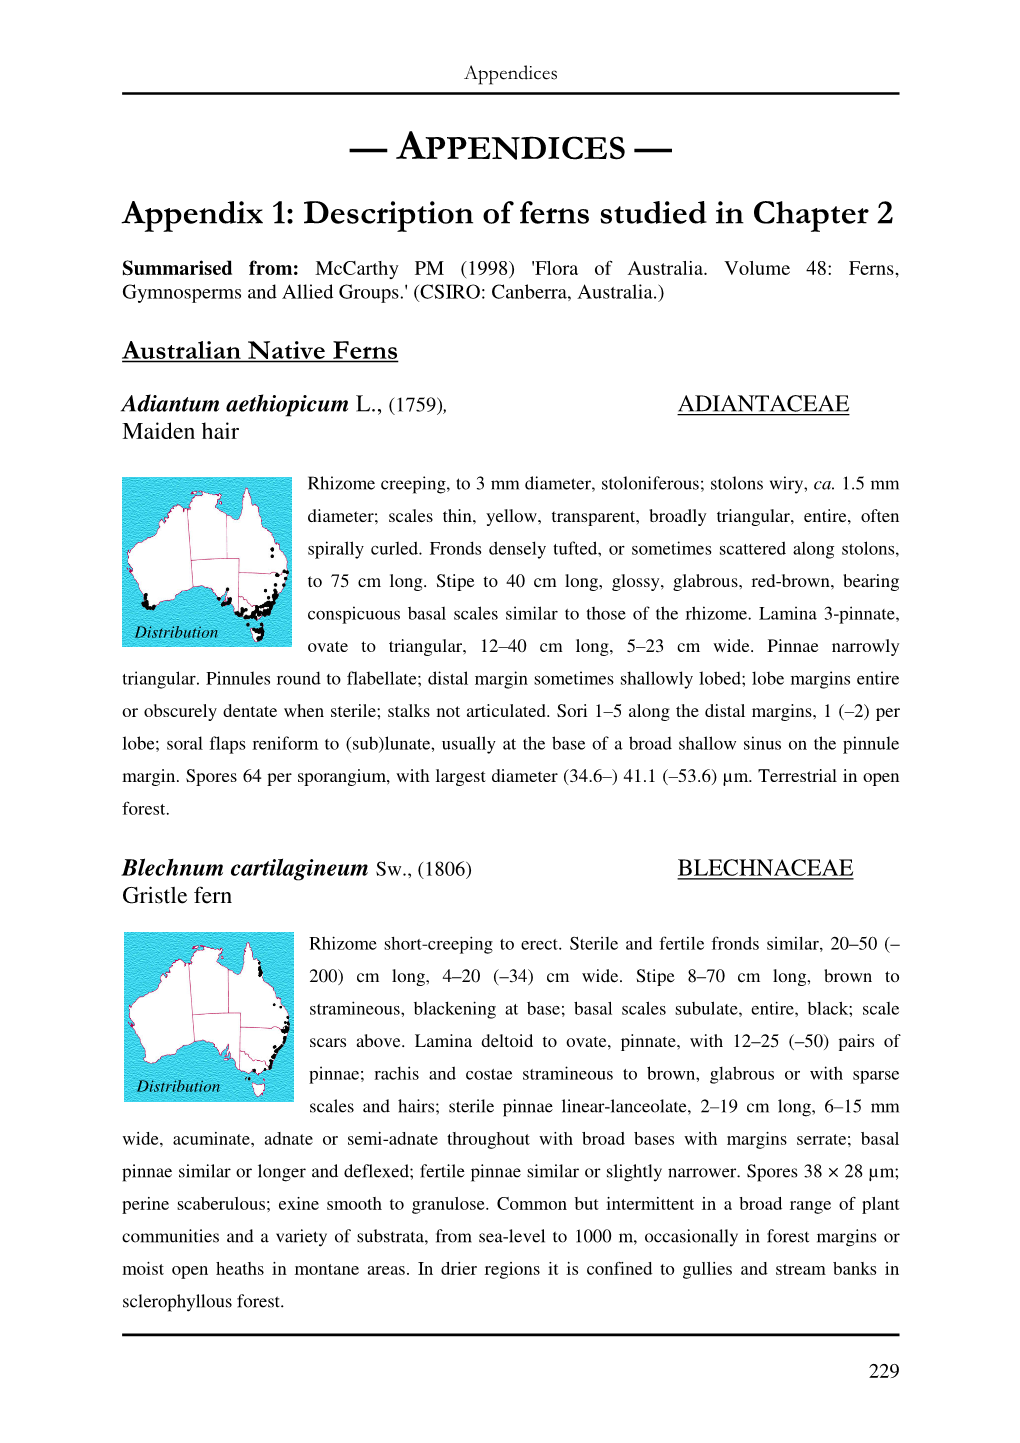 — APPENDICES — Appendix 1: Description of Ferns Studied in Chapter 2